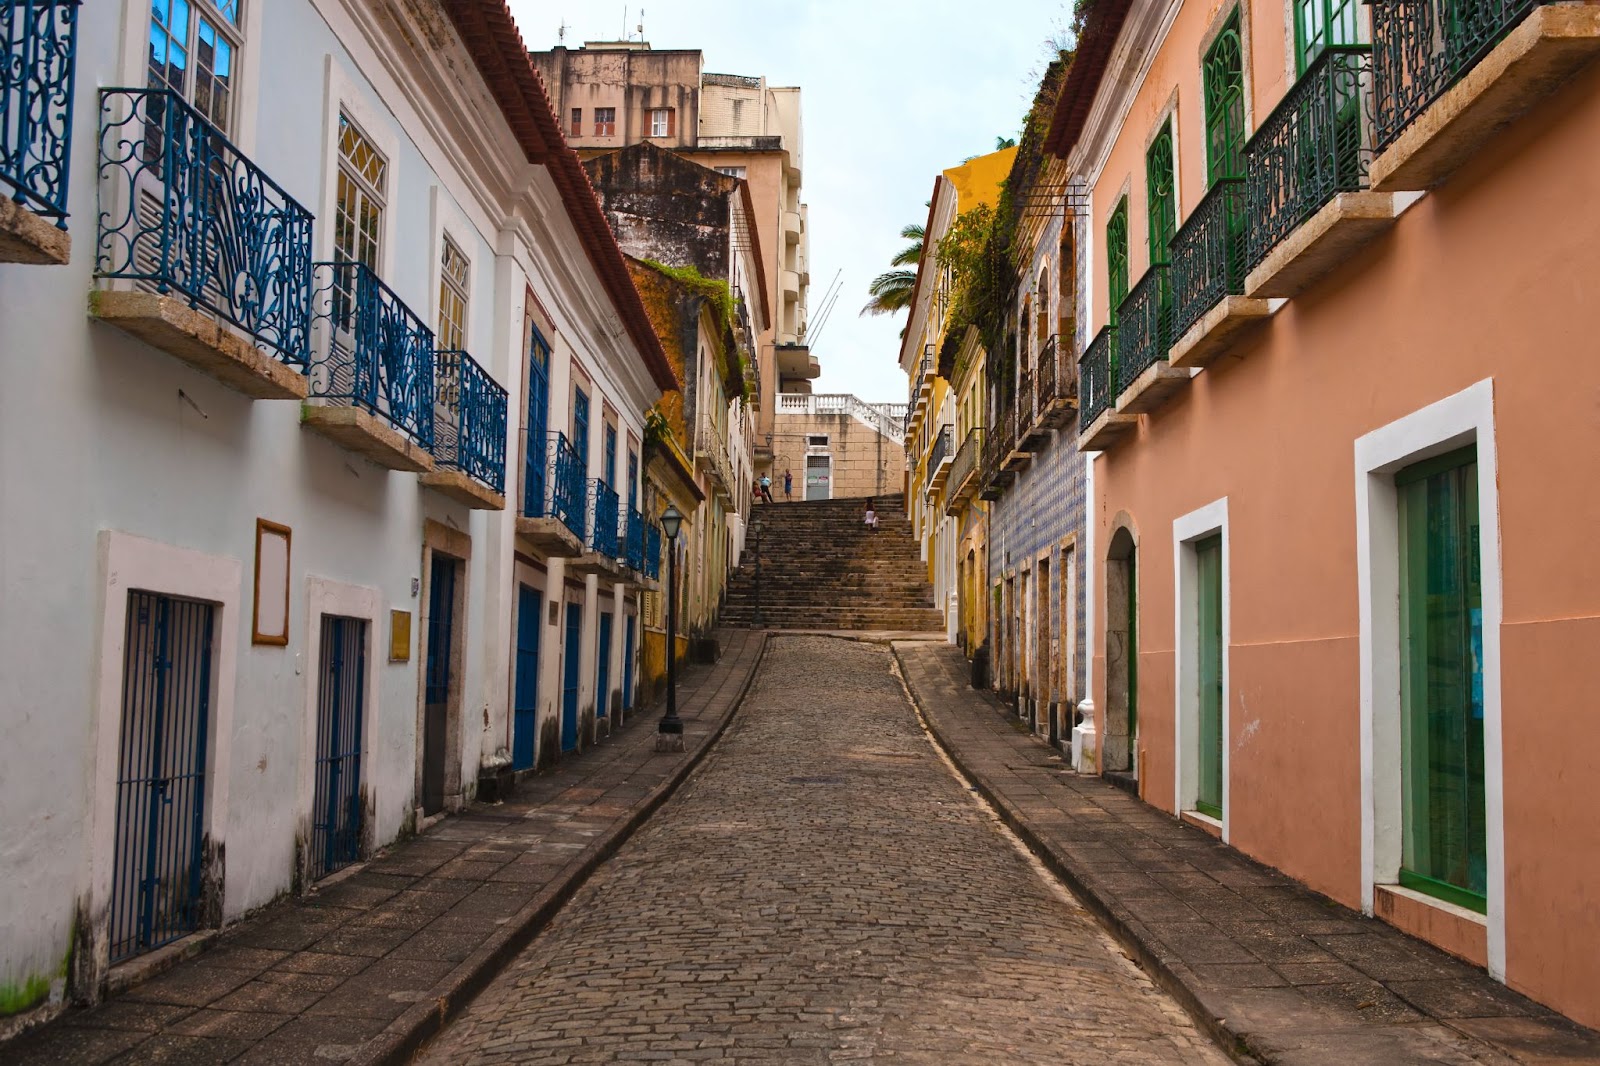 Construções do Centro Histórico de São Luís. Os casarões em estilo português têm portas e janelas enfileiradas e fachadas revestidas por azulejos.